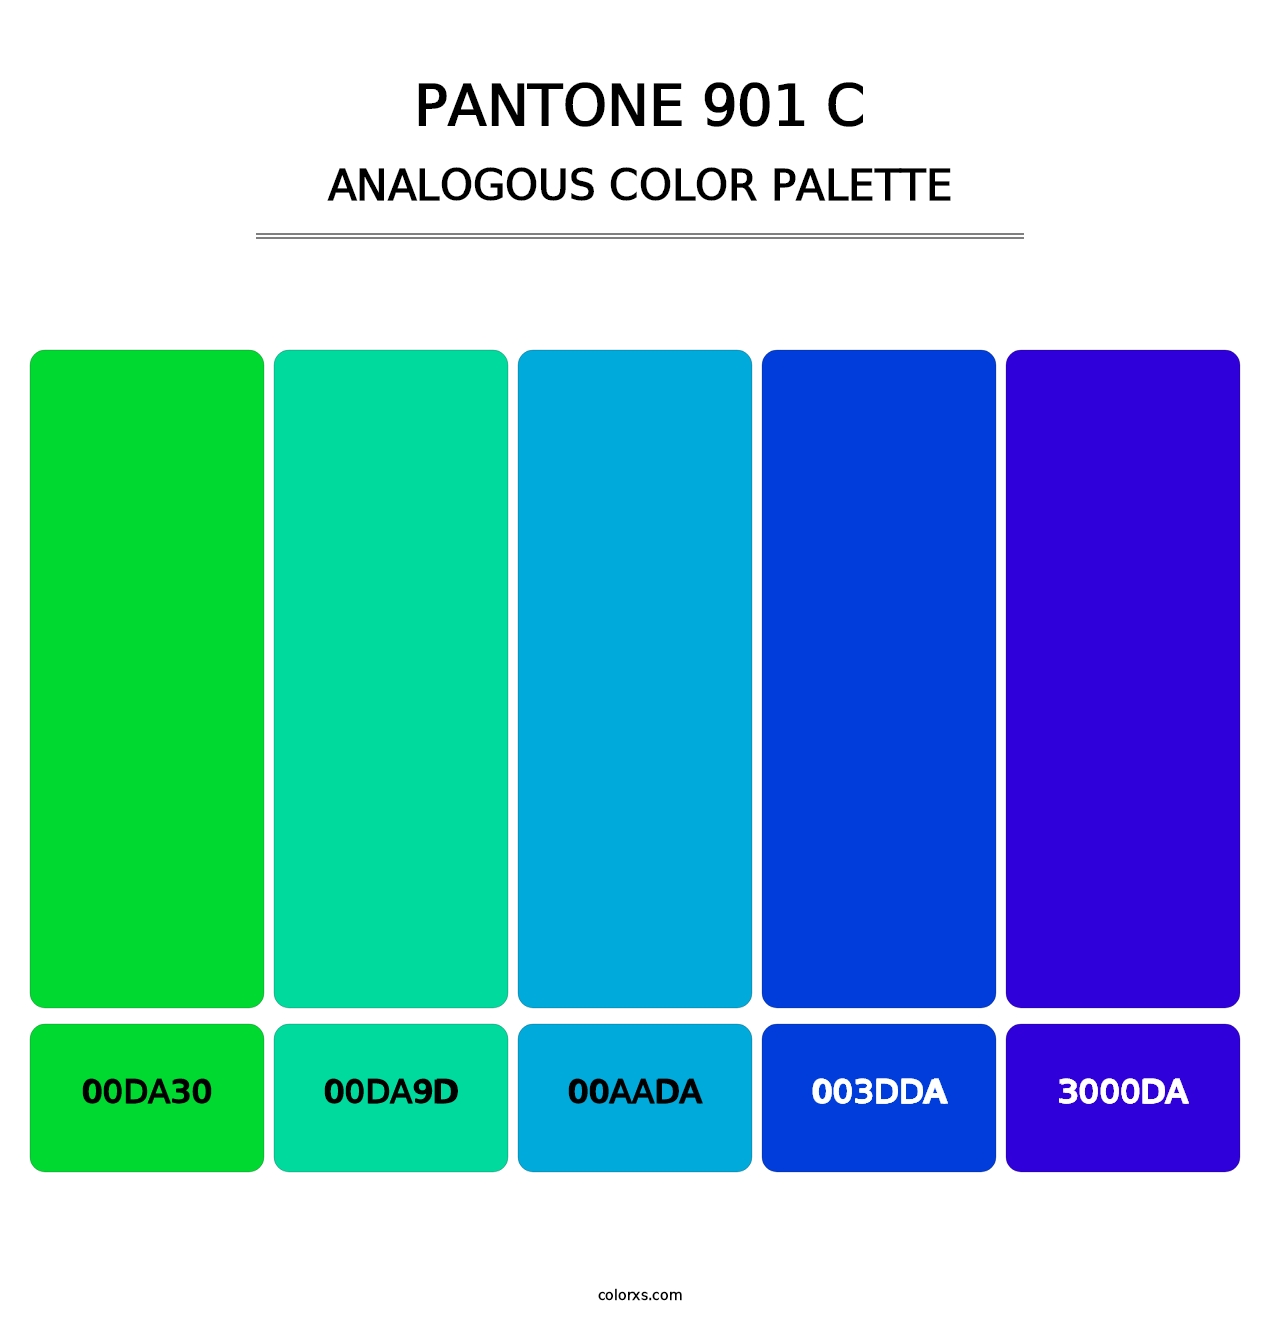 PANTONE 901 C - Analogous Color Palette